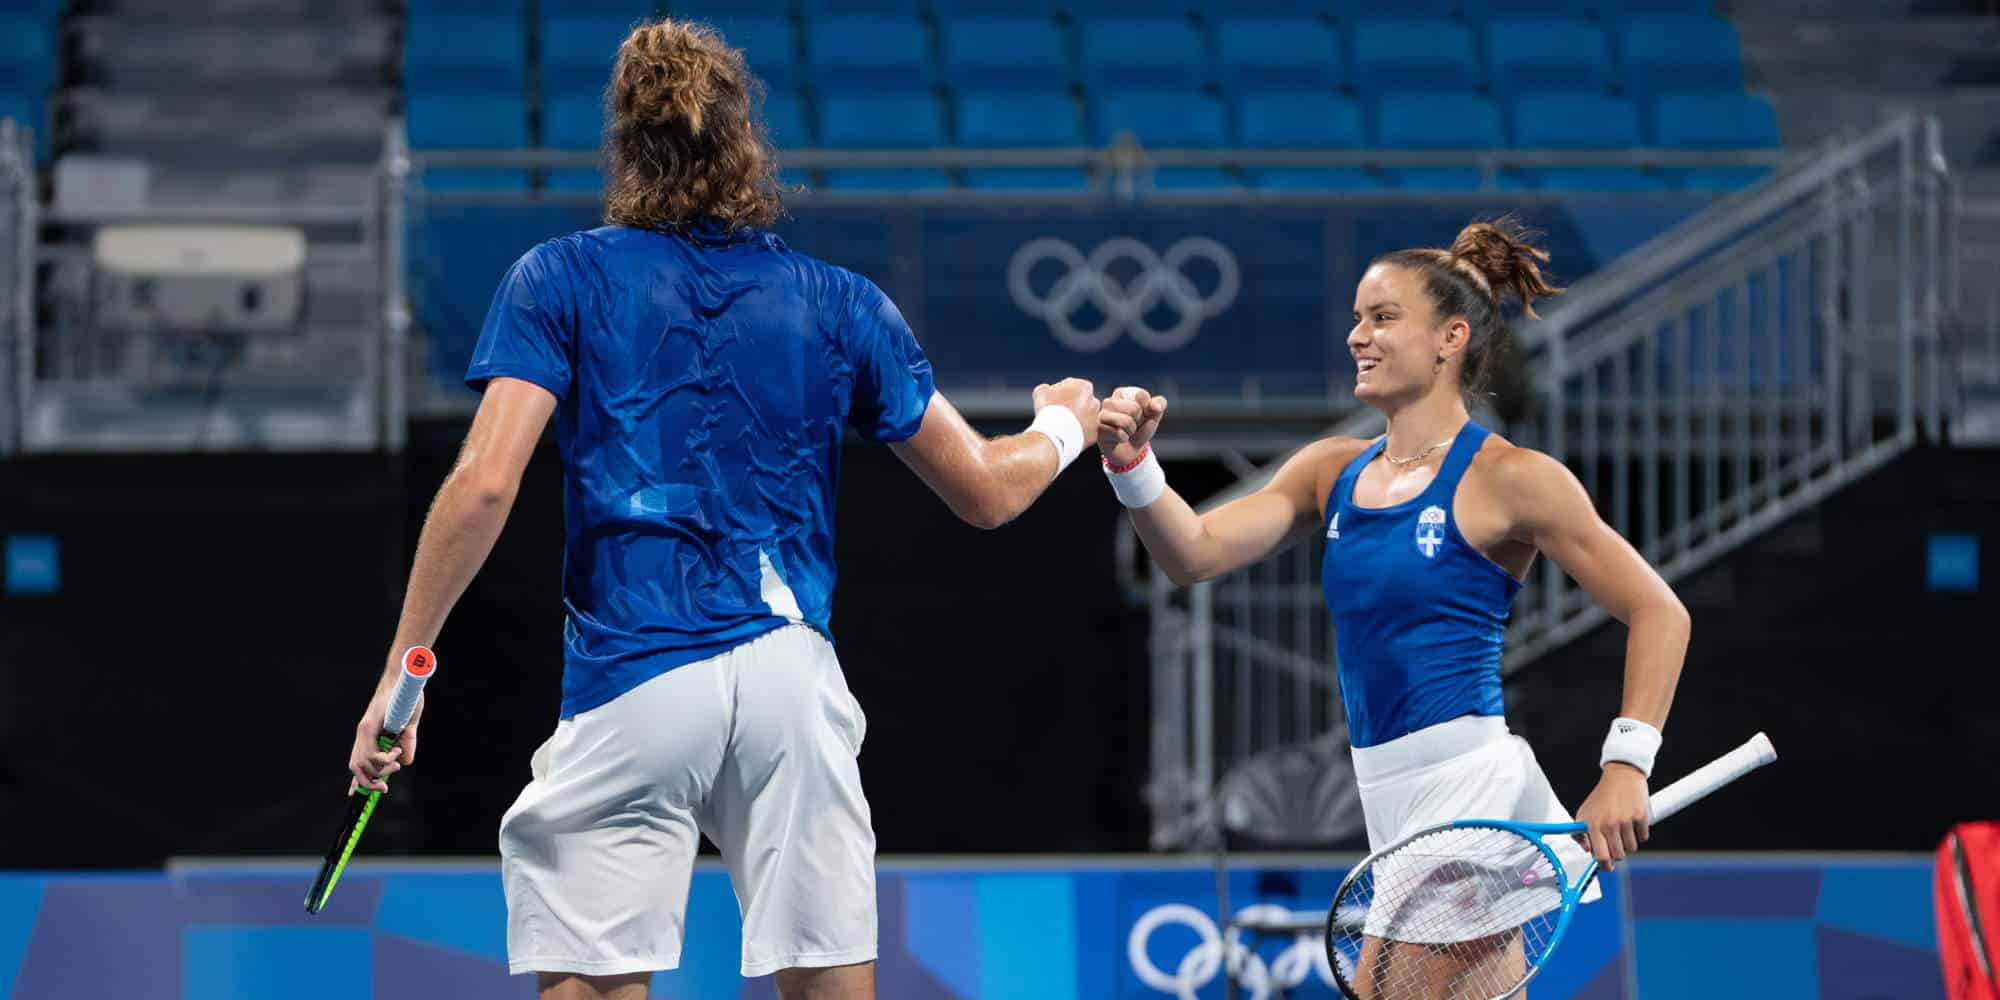 Οι αθλητές του τένις, Μαρία Σάκκαρη και Στέφανος Τσιτσιπάς